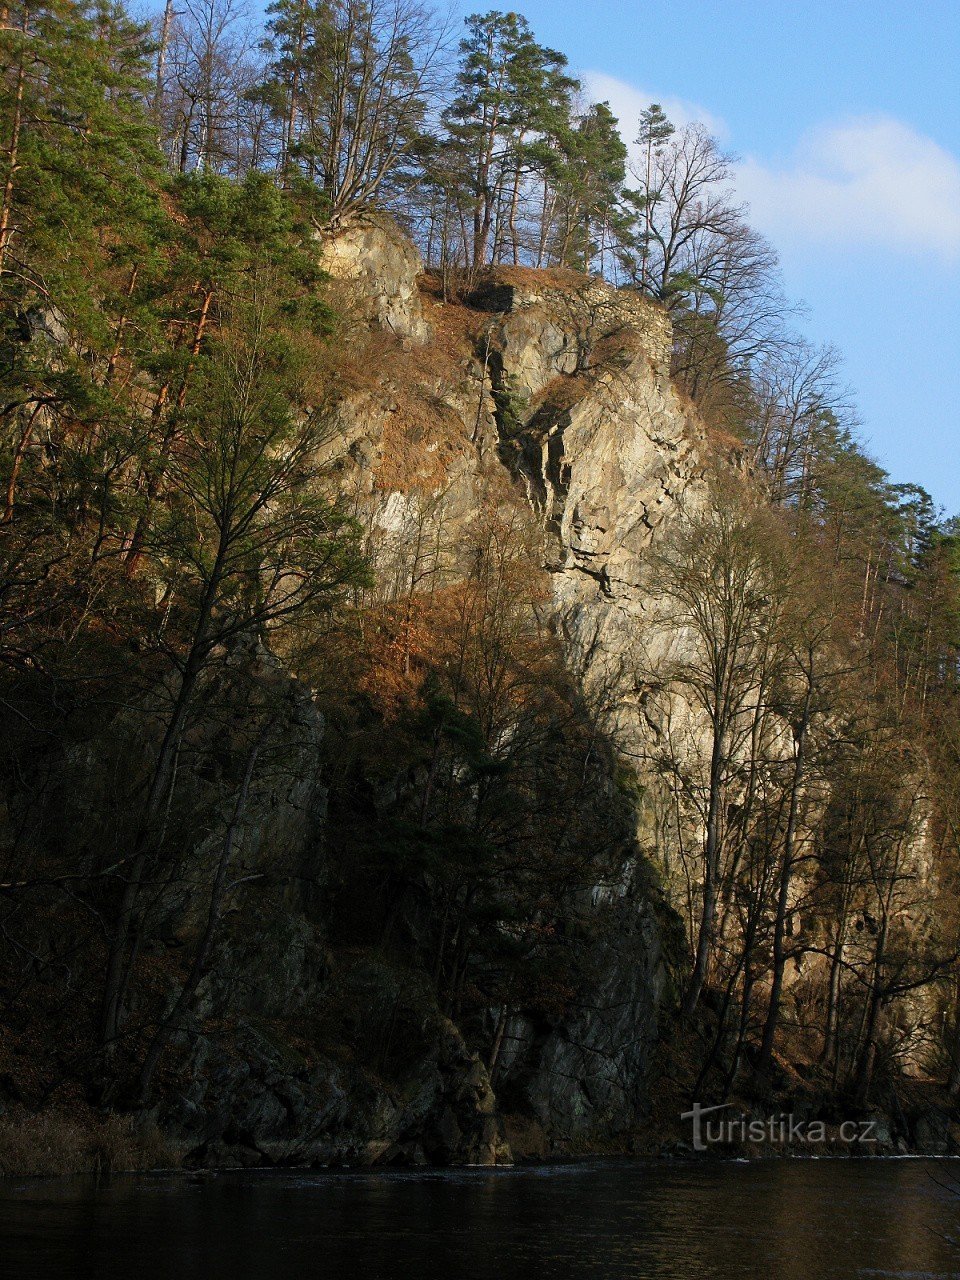 Τα ερείπια του κάστρου Kotek